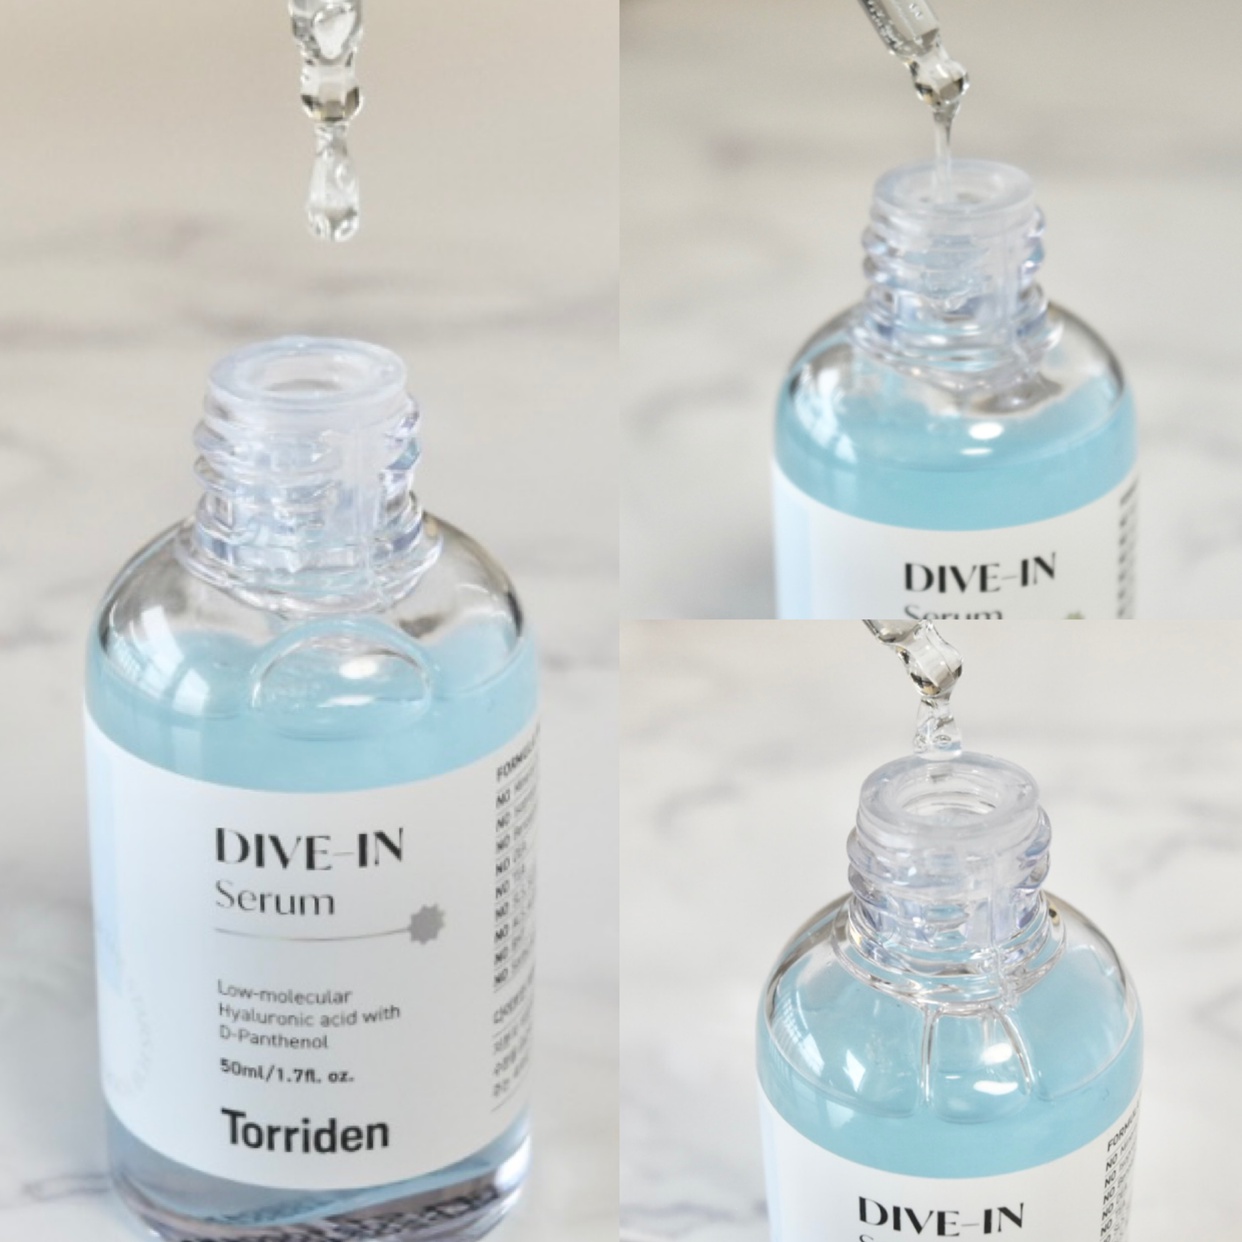 Torriden(トリデン) ダイブイン低分子ヒアルロン酸 セラムを使ったみゆさんのクチコミ画像4